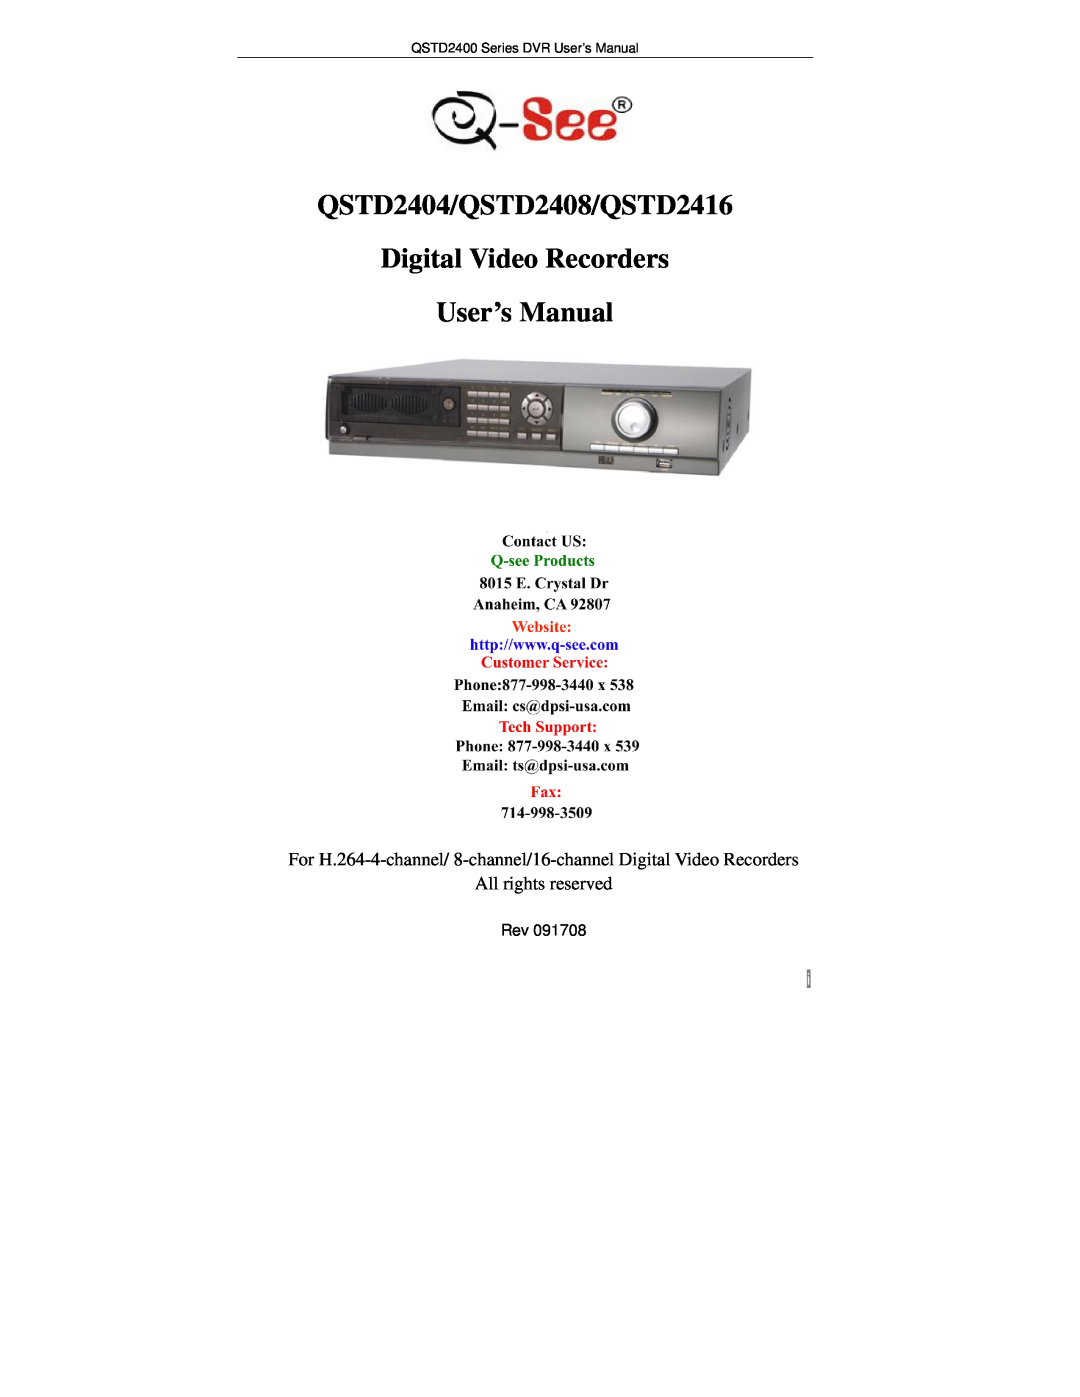 Q-See user manual QSTD2404/QSTD2408/QSTD2416 Digital Video Recorders User’s Manual, All rights reserved 